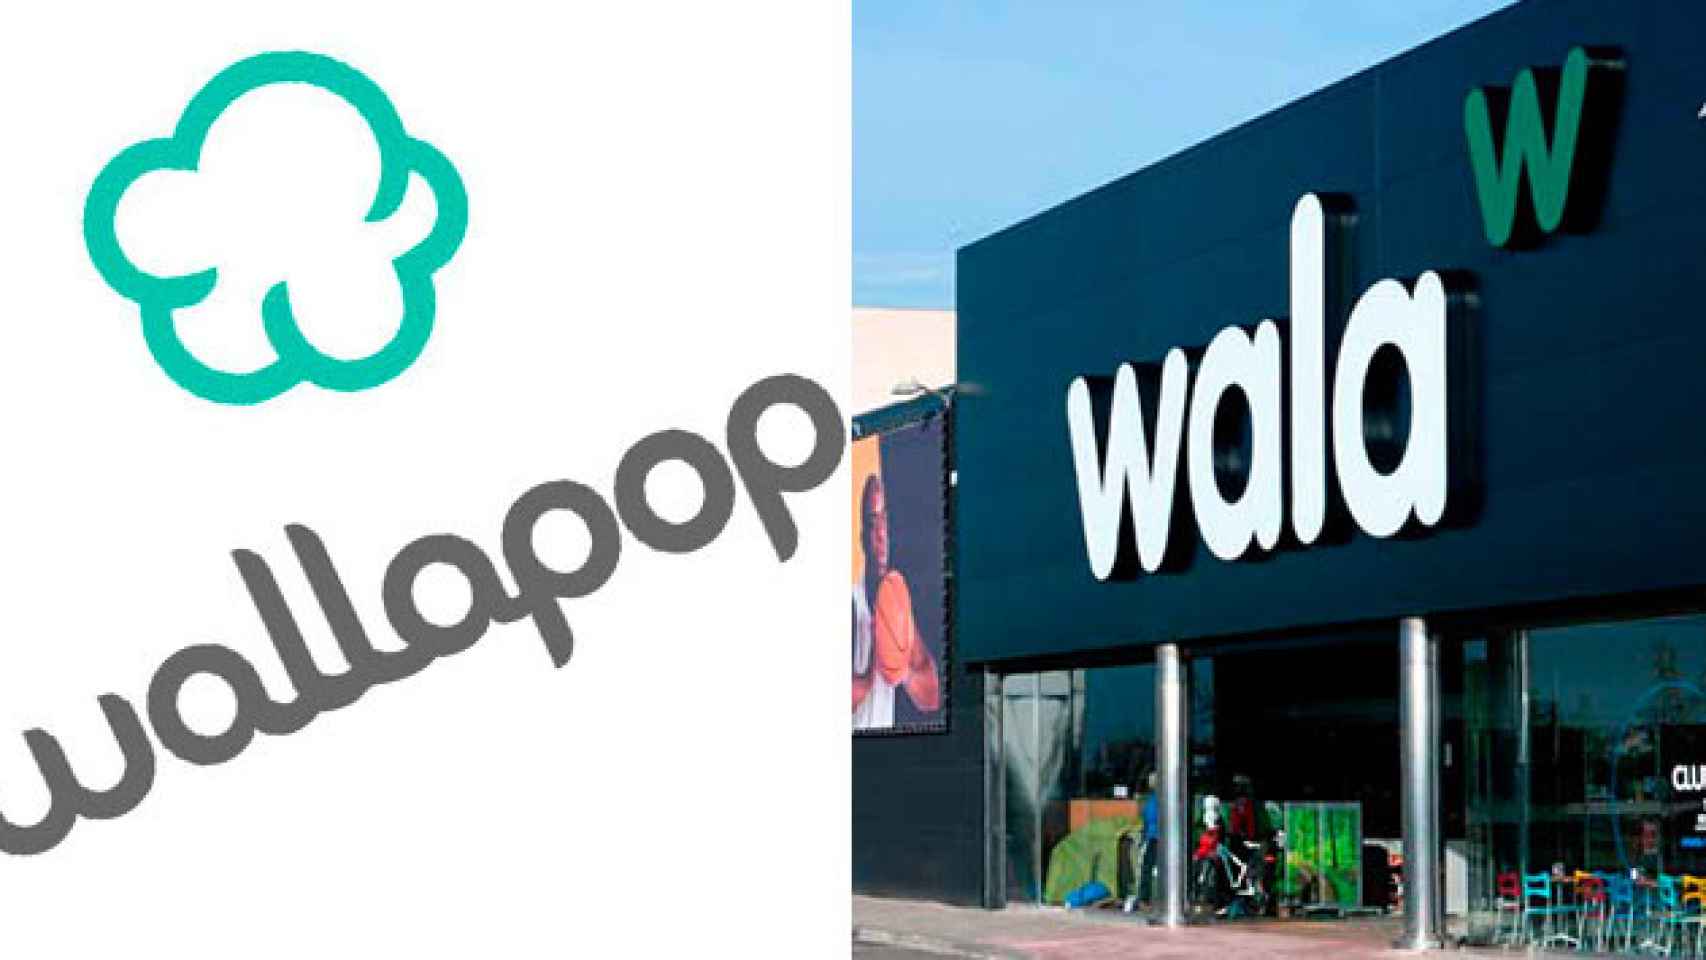 El logotipo de Wallapop y una de las tiendas Wala de Unipreus / CG